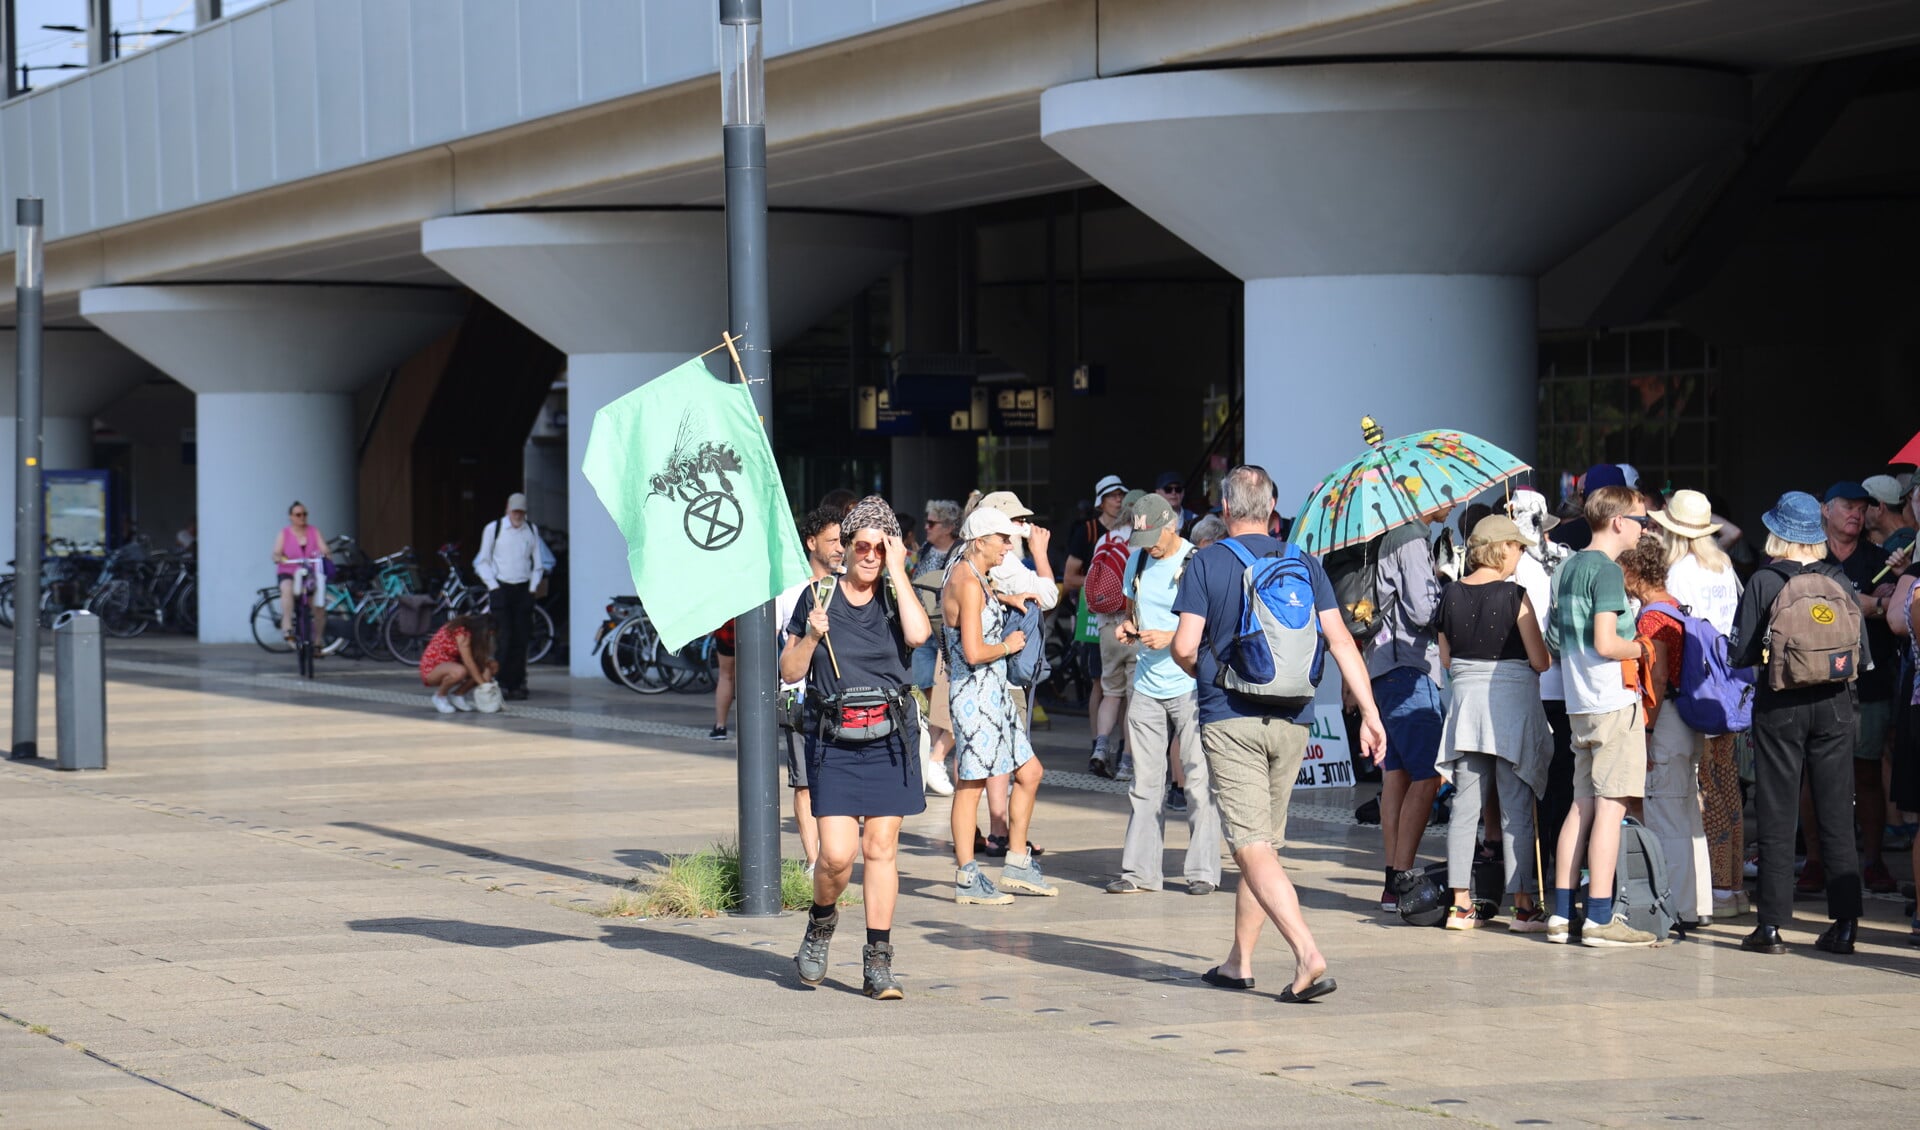 De activisten verzamelden zich vanmorgen bij Station Voorburg (foto: VR Press).